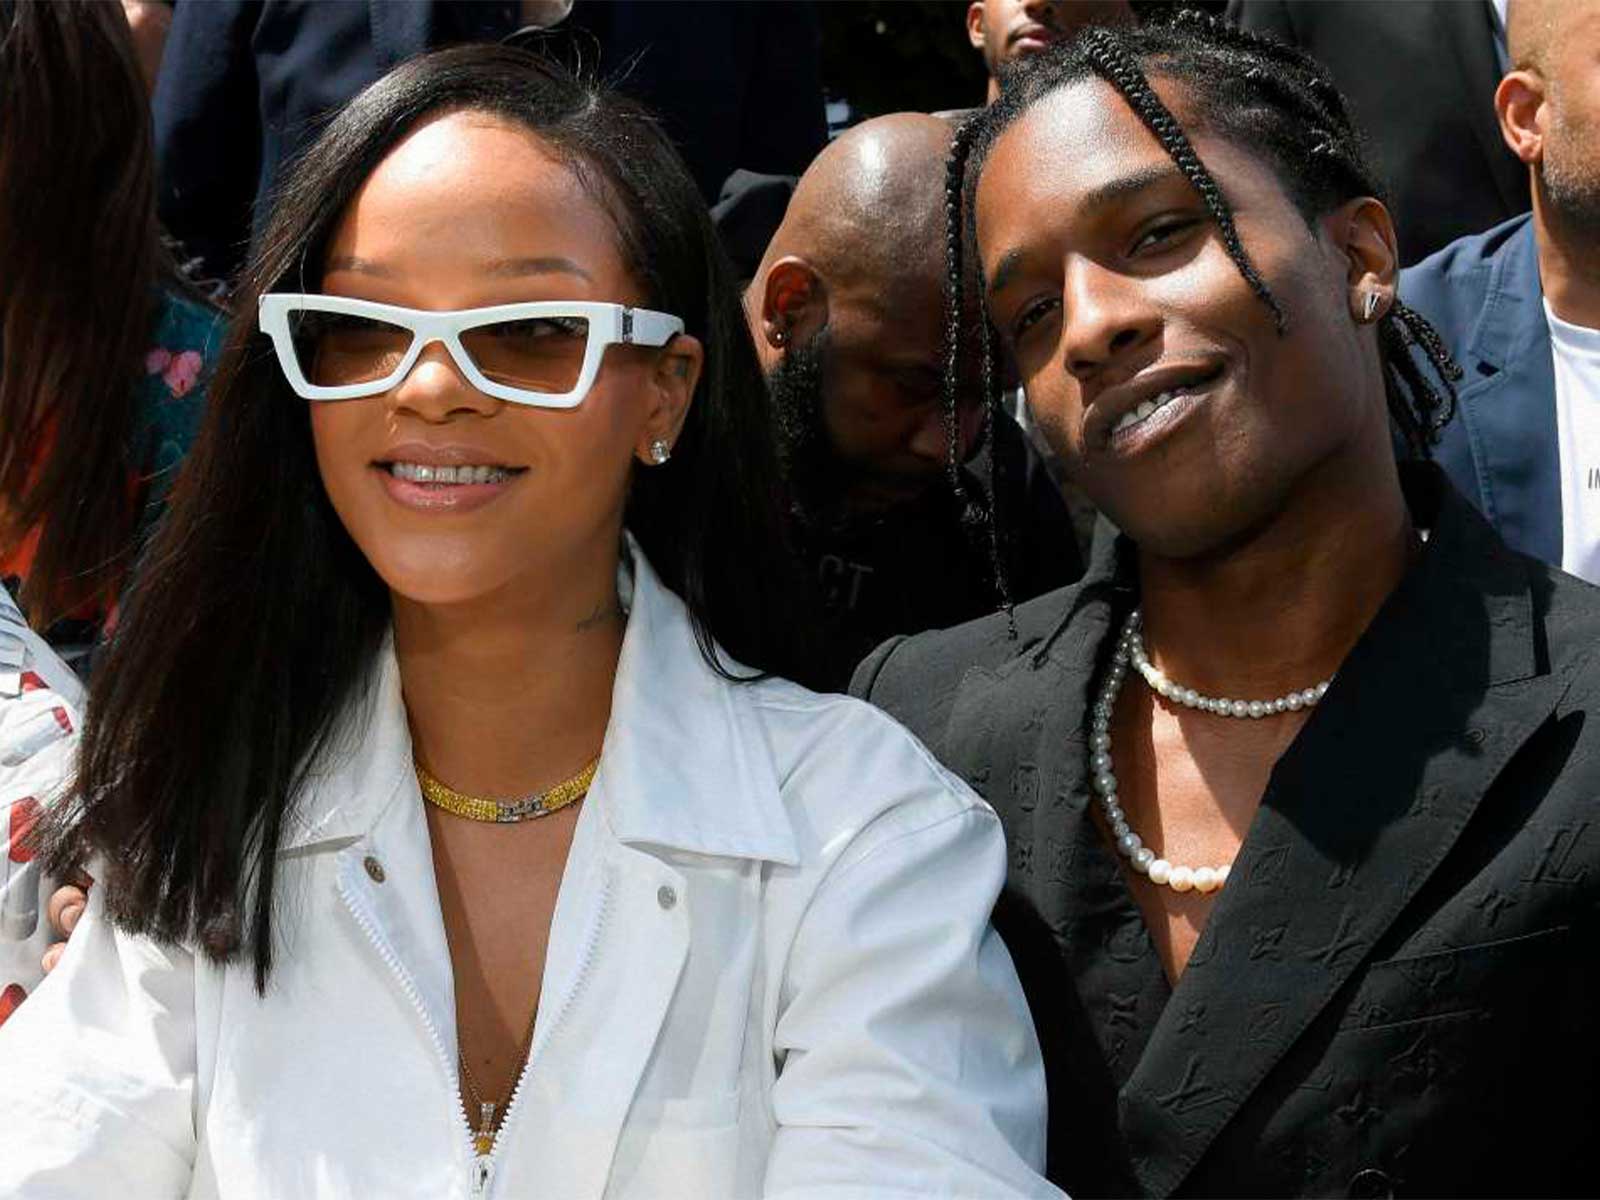 El próximo proyecto de A$AP Rocky está protagonizado por Rihanna